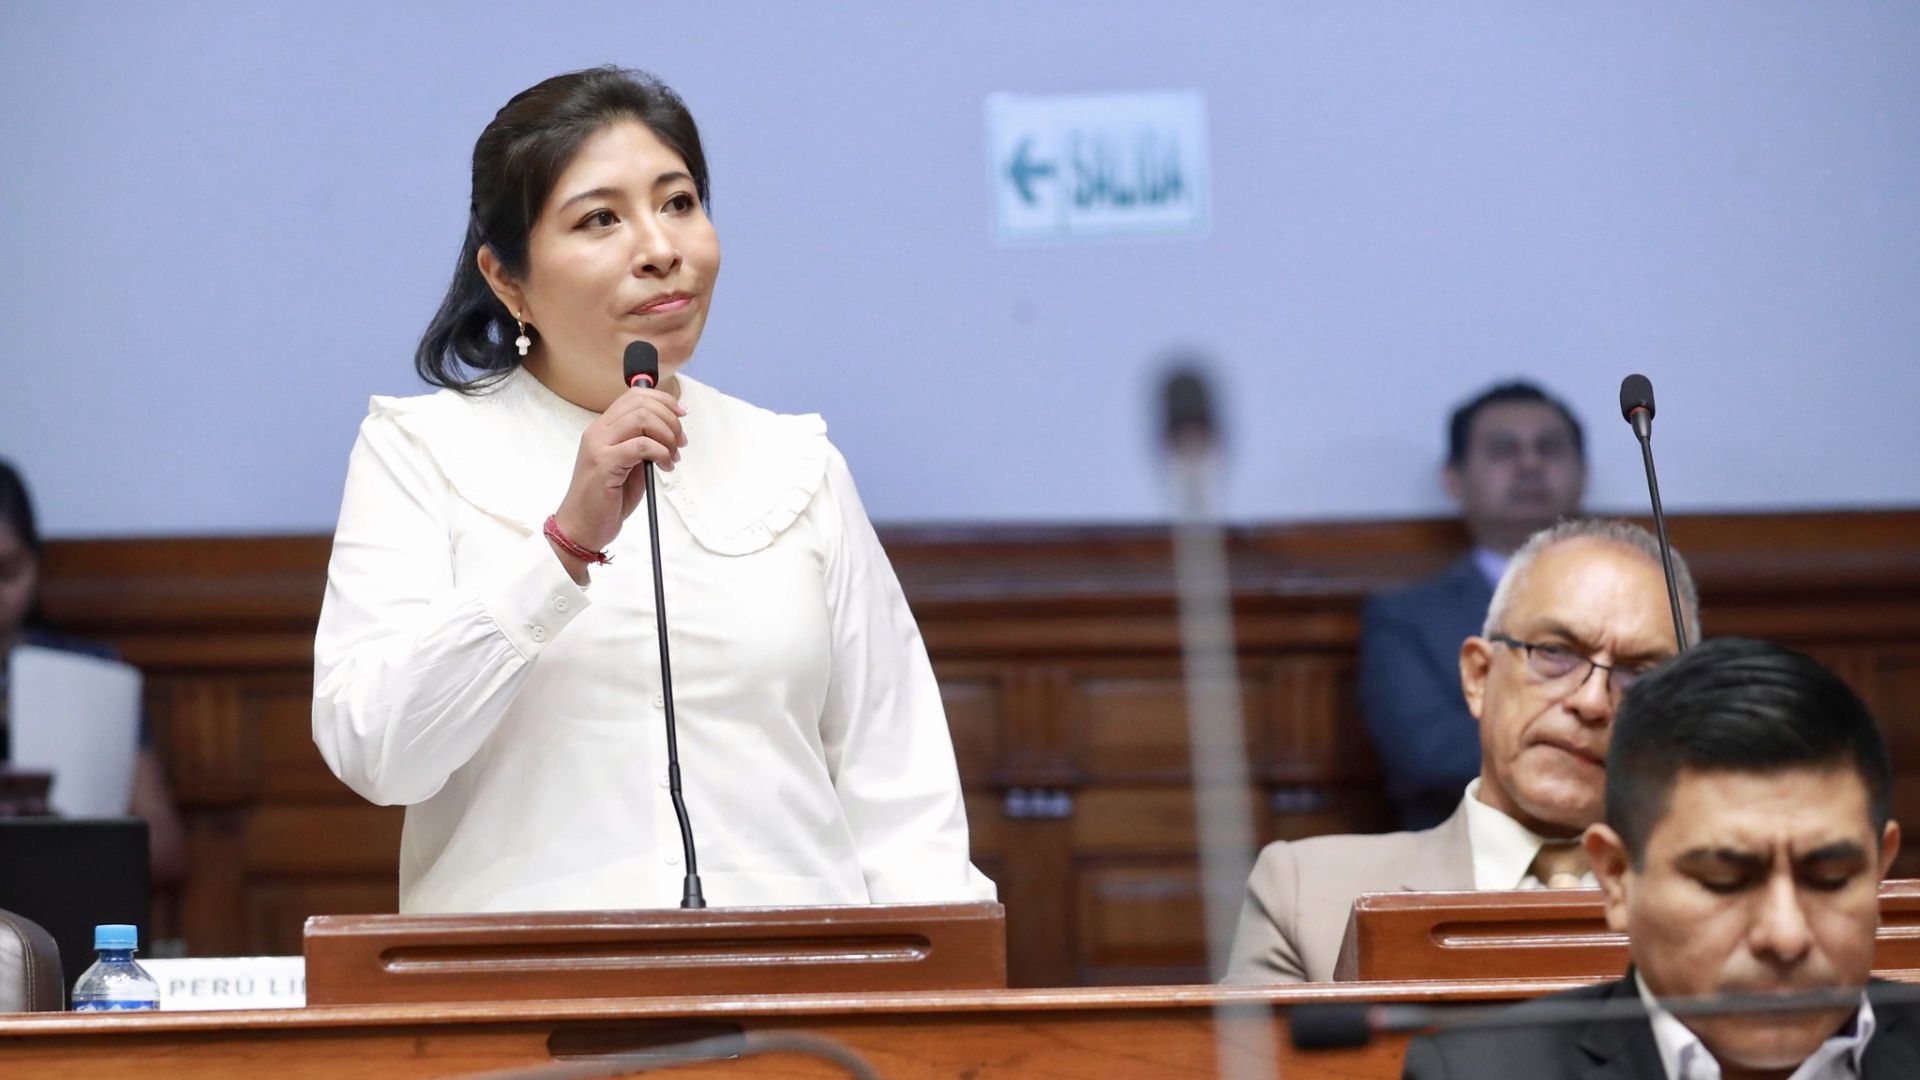 EN VIVO Betssy Chávez fue suspendida del Congreso y será acusada constitucionalmente por participación en autogolpe